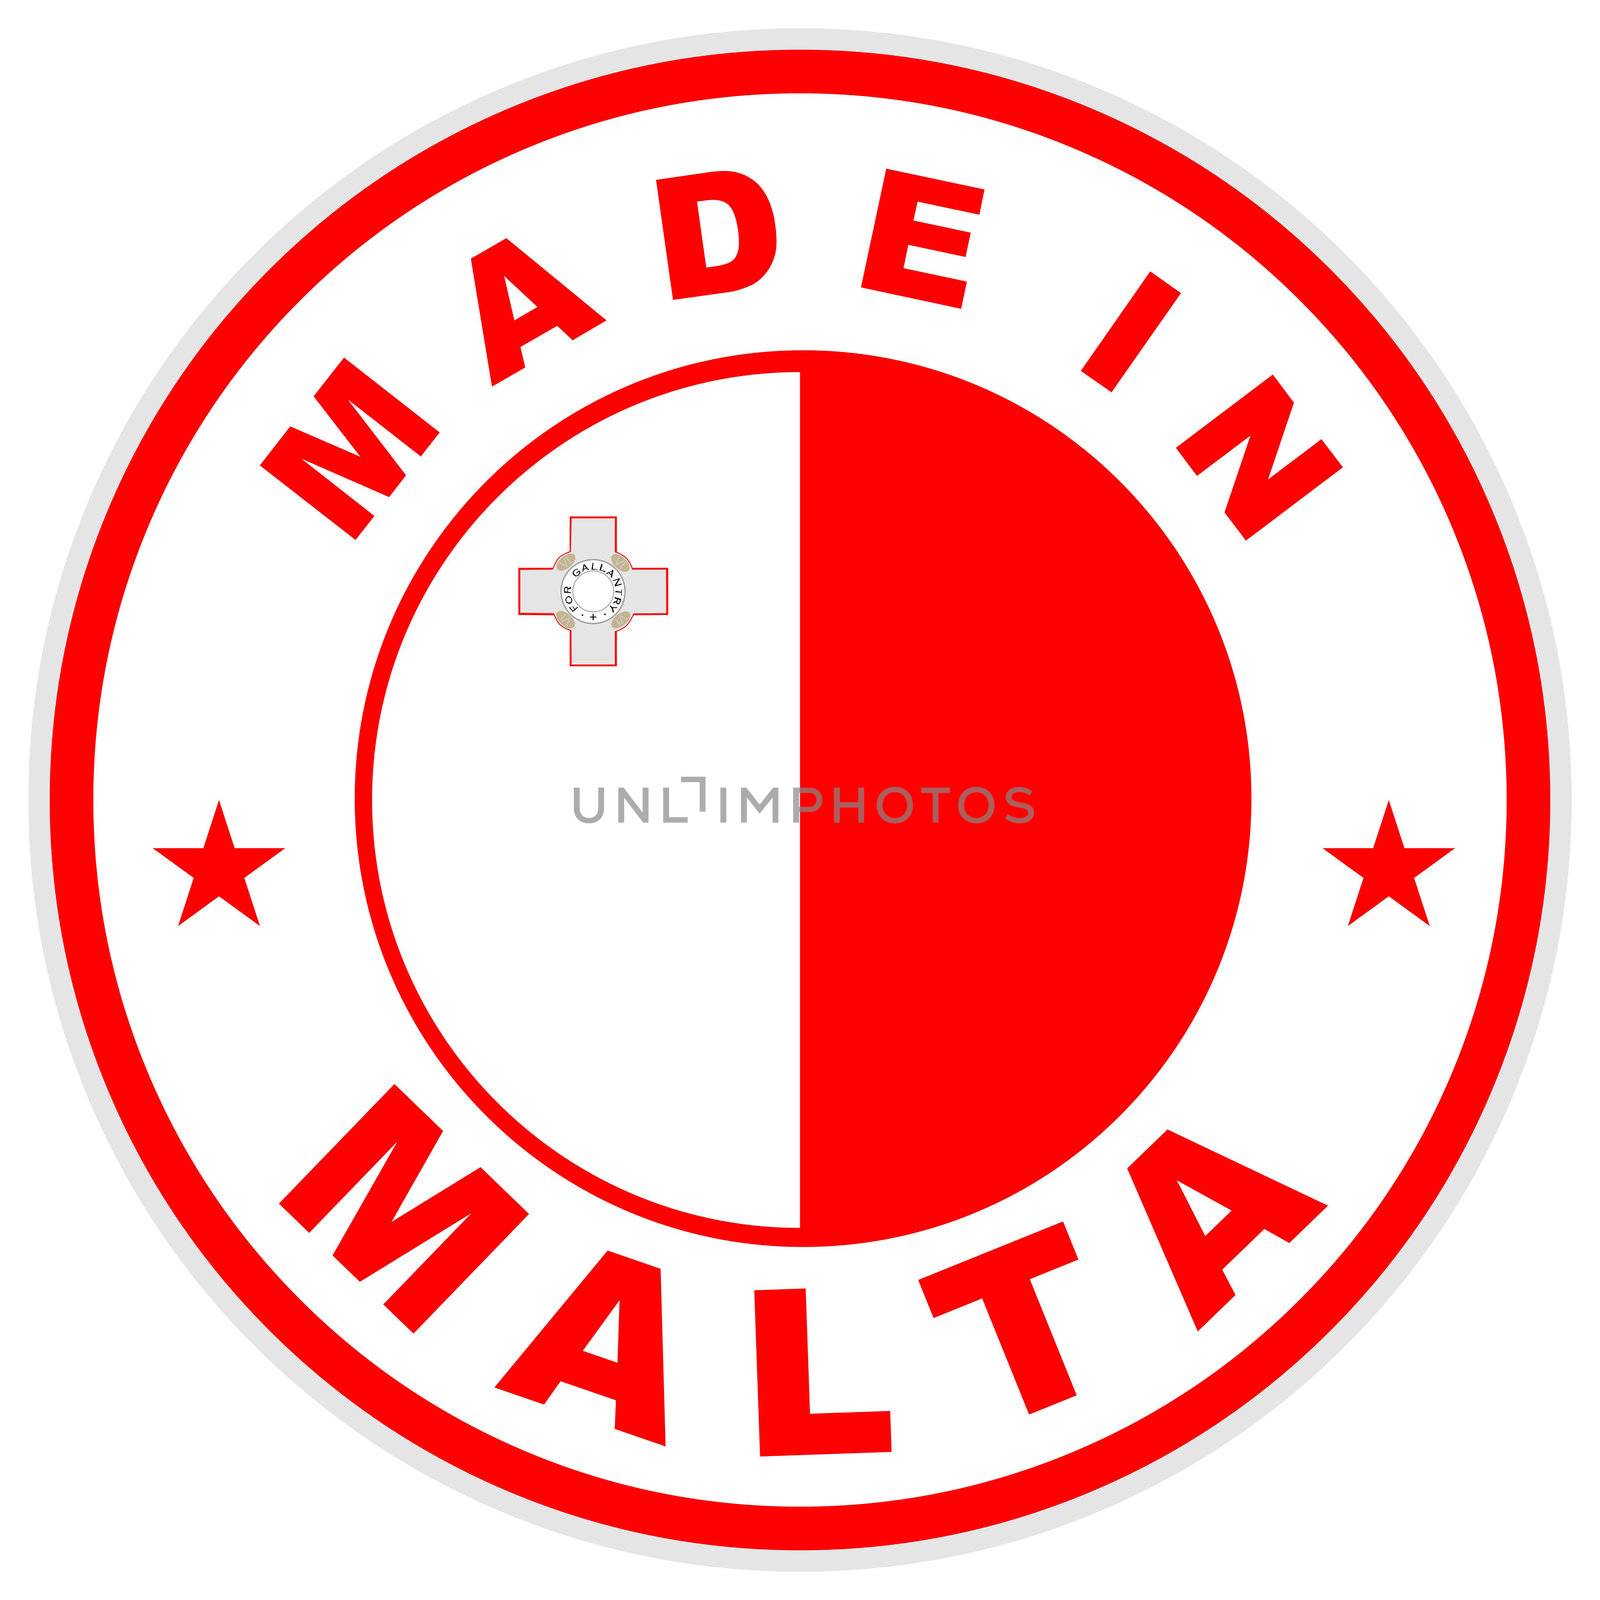 made in malta by tony4urban